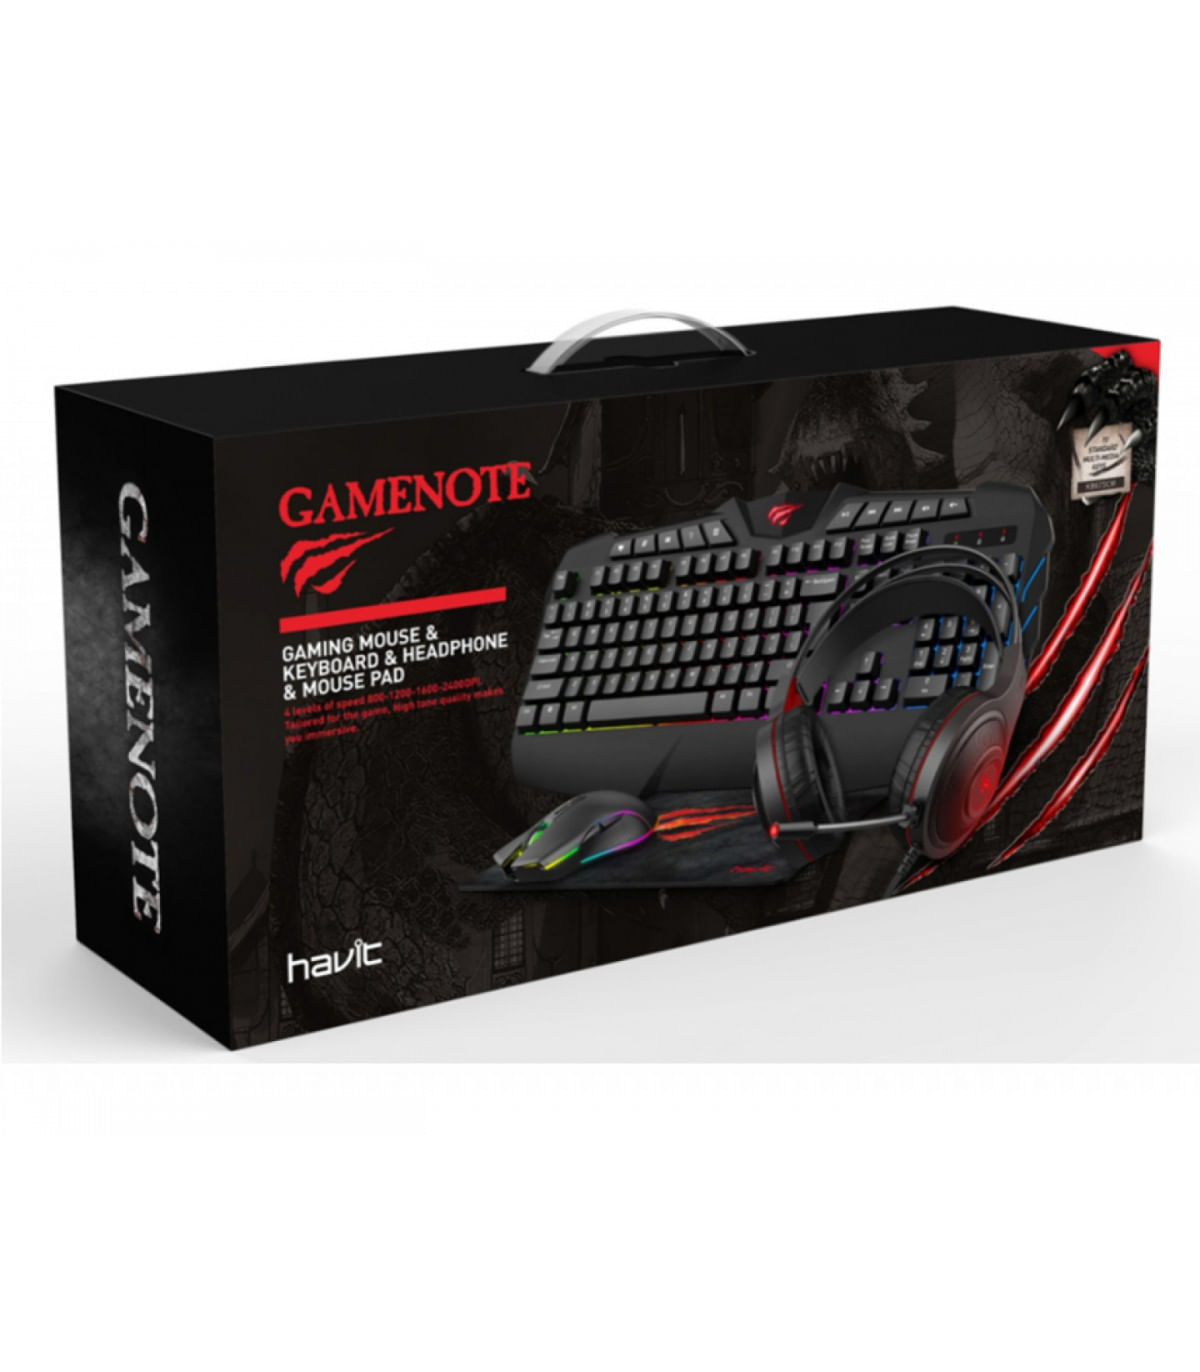 Combo Gaming 4 en 1 Teclado RGB Mouse, Audífono y Mousepad GAMENOTE HAVIT KB501CM multimedia c/Negro